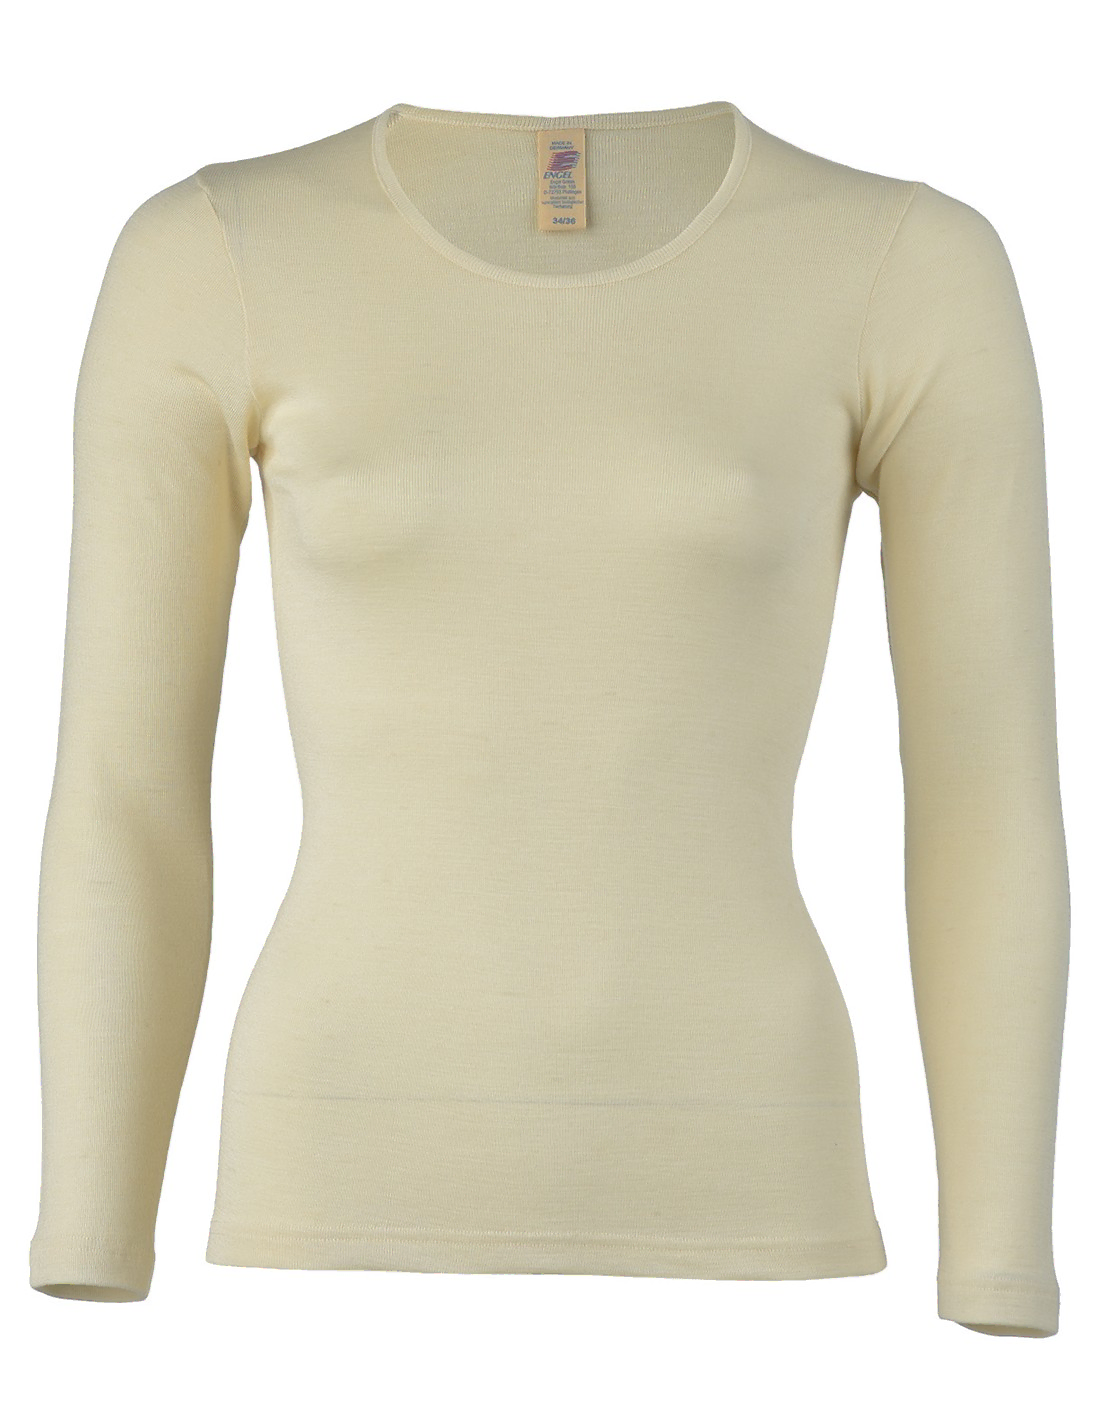 Image of Dames Shirt Lange Mouw Zijde Wol Engel Natur, Kleur Gebroken wit, Maat 42/44 - Large